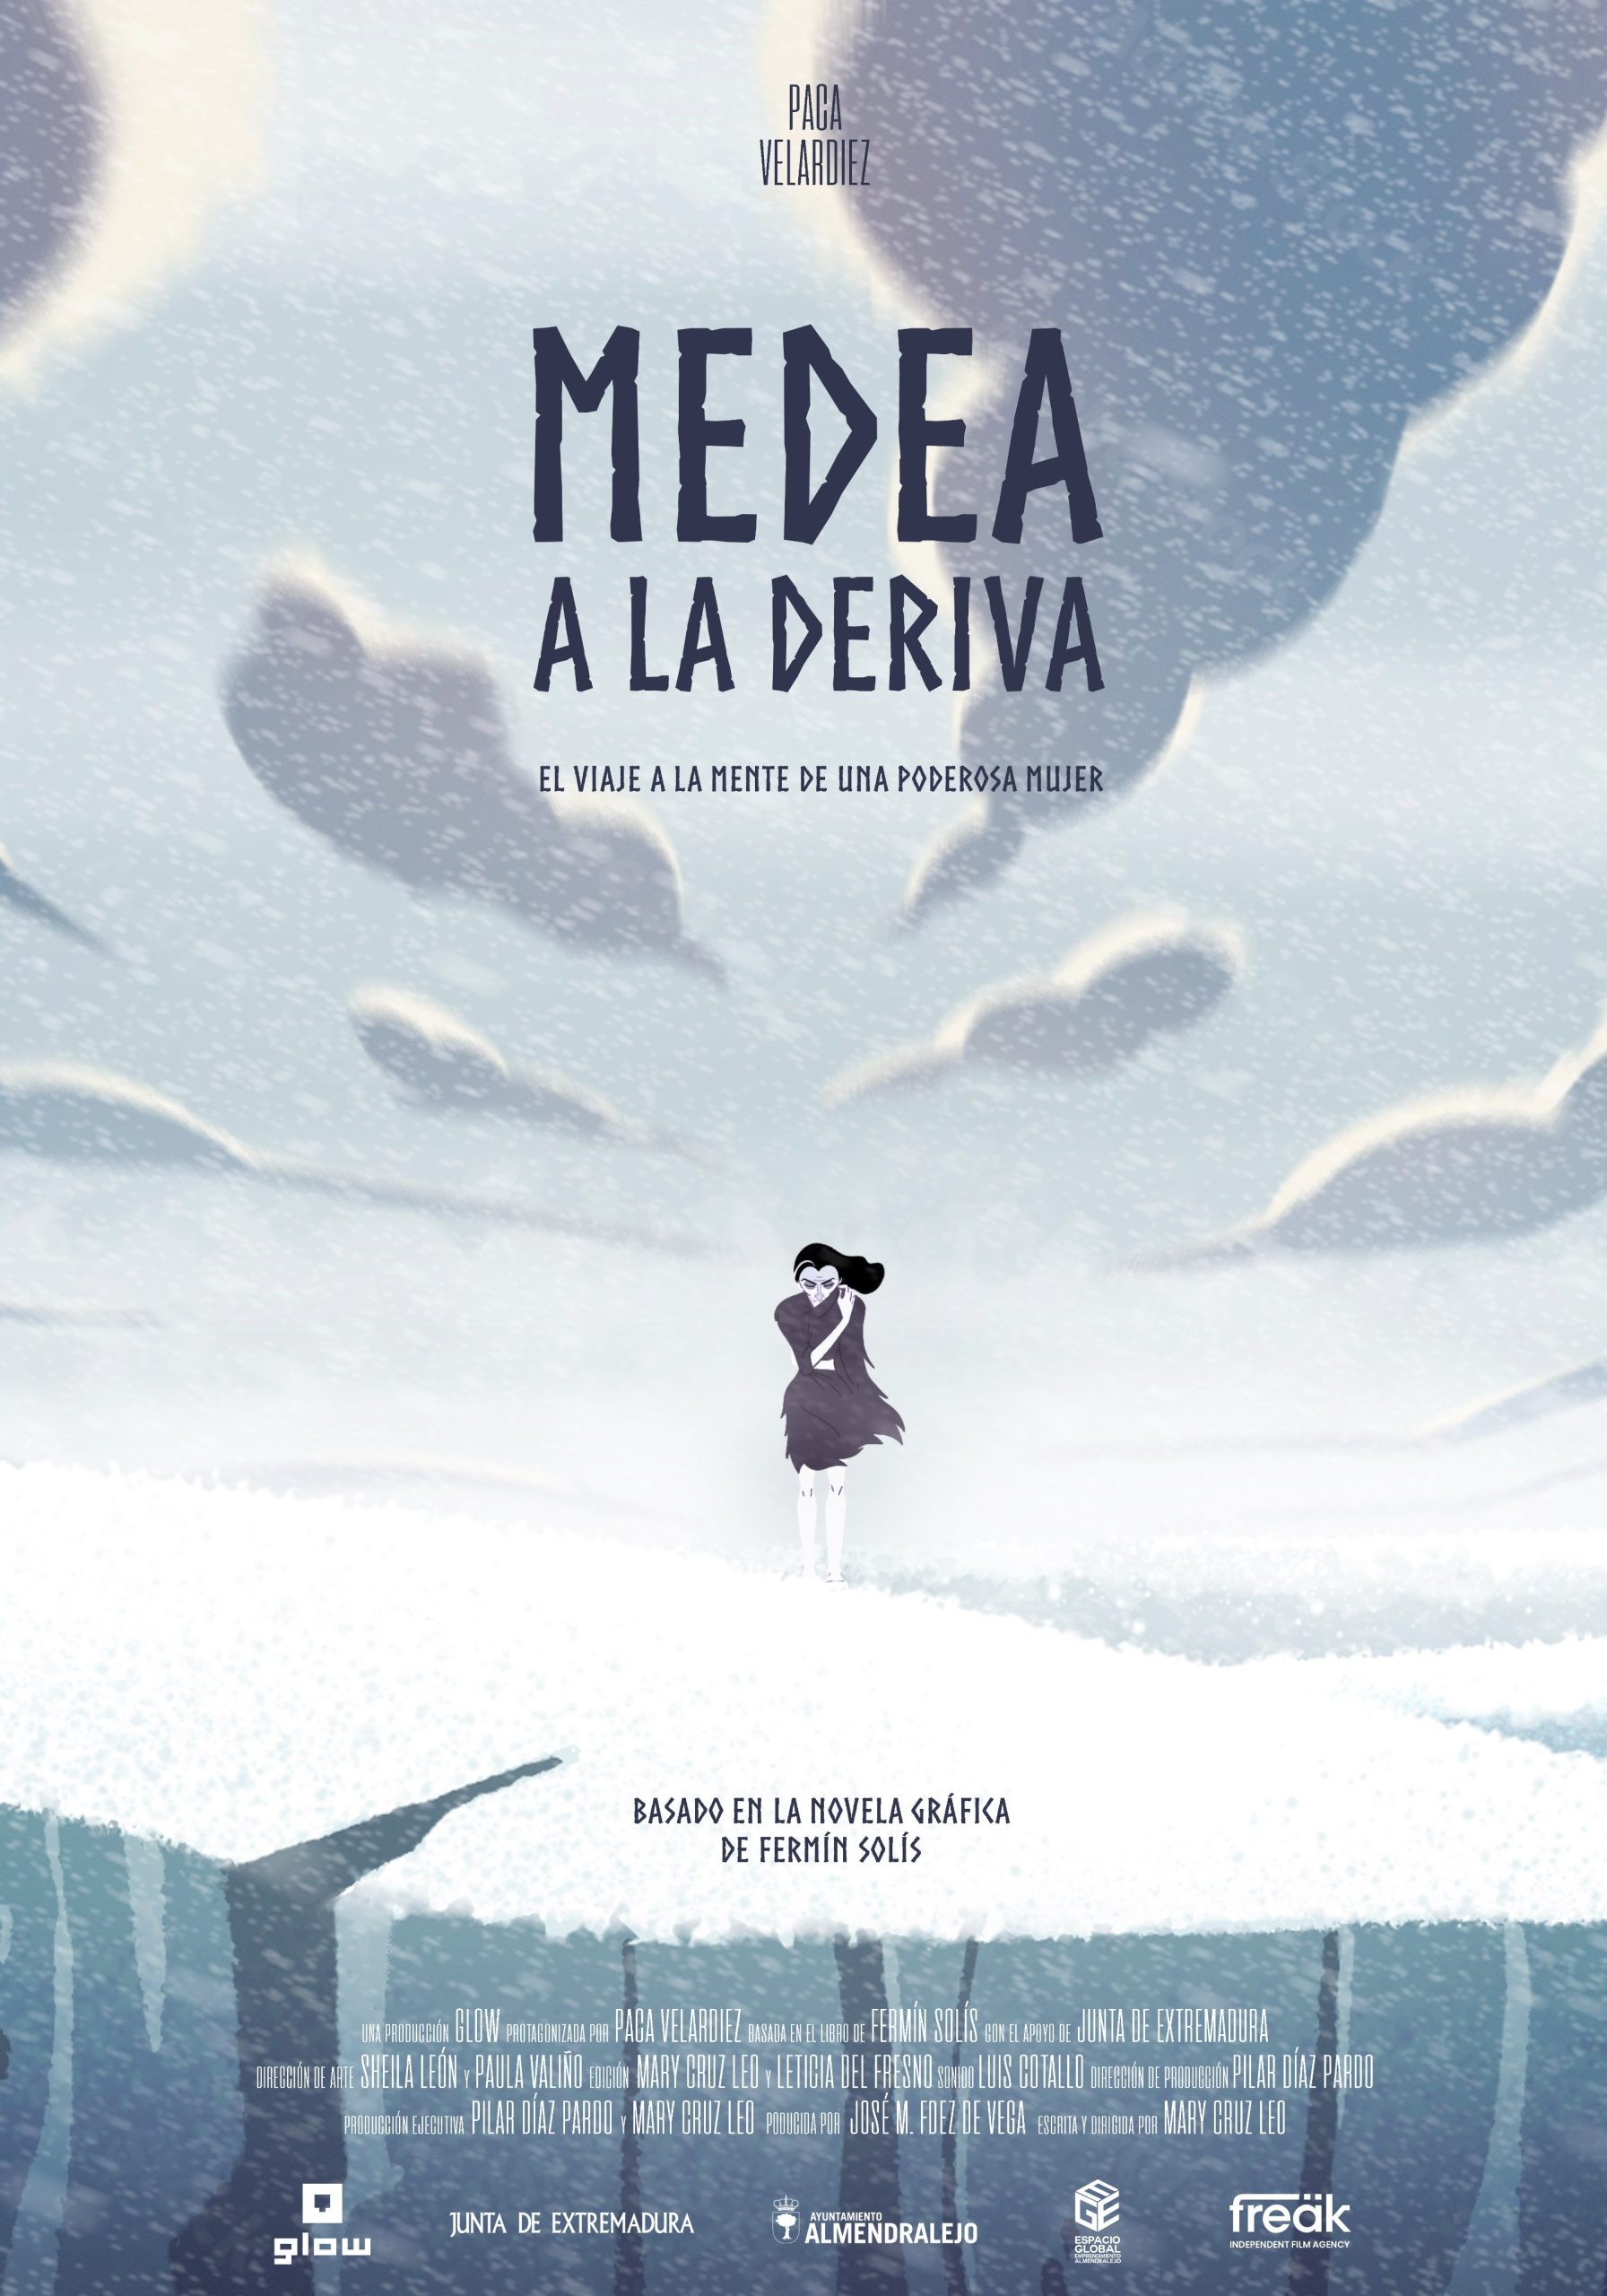 Medea a la deriva Mary Cruz Leo Fermín Solís The Glow Animation Studio España cortometraje adaptación póster